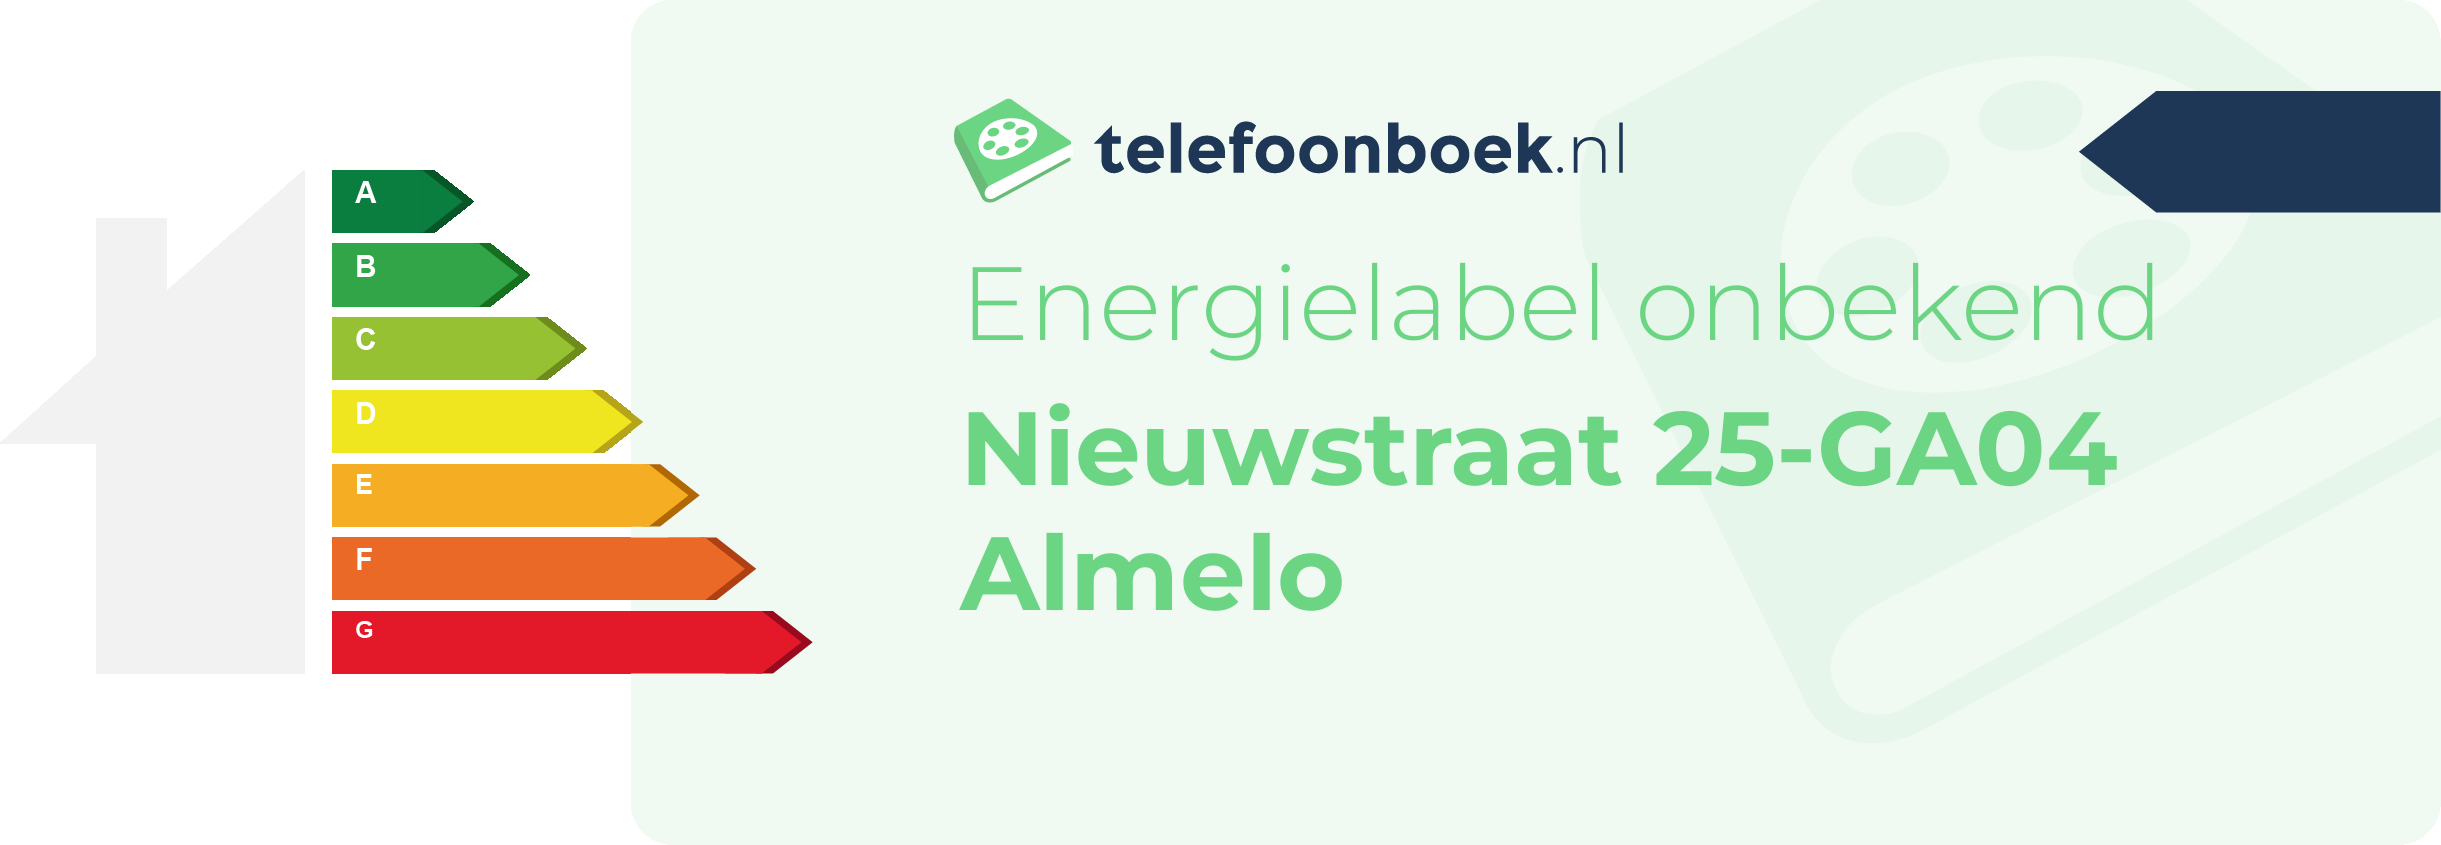 Energielabel Nieuwstraat 25-GA04 Almelo